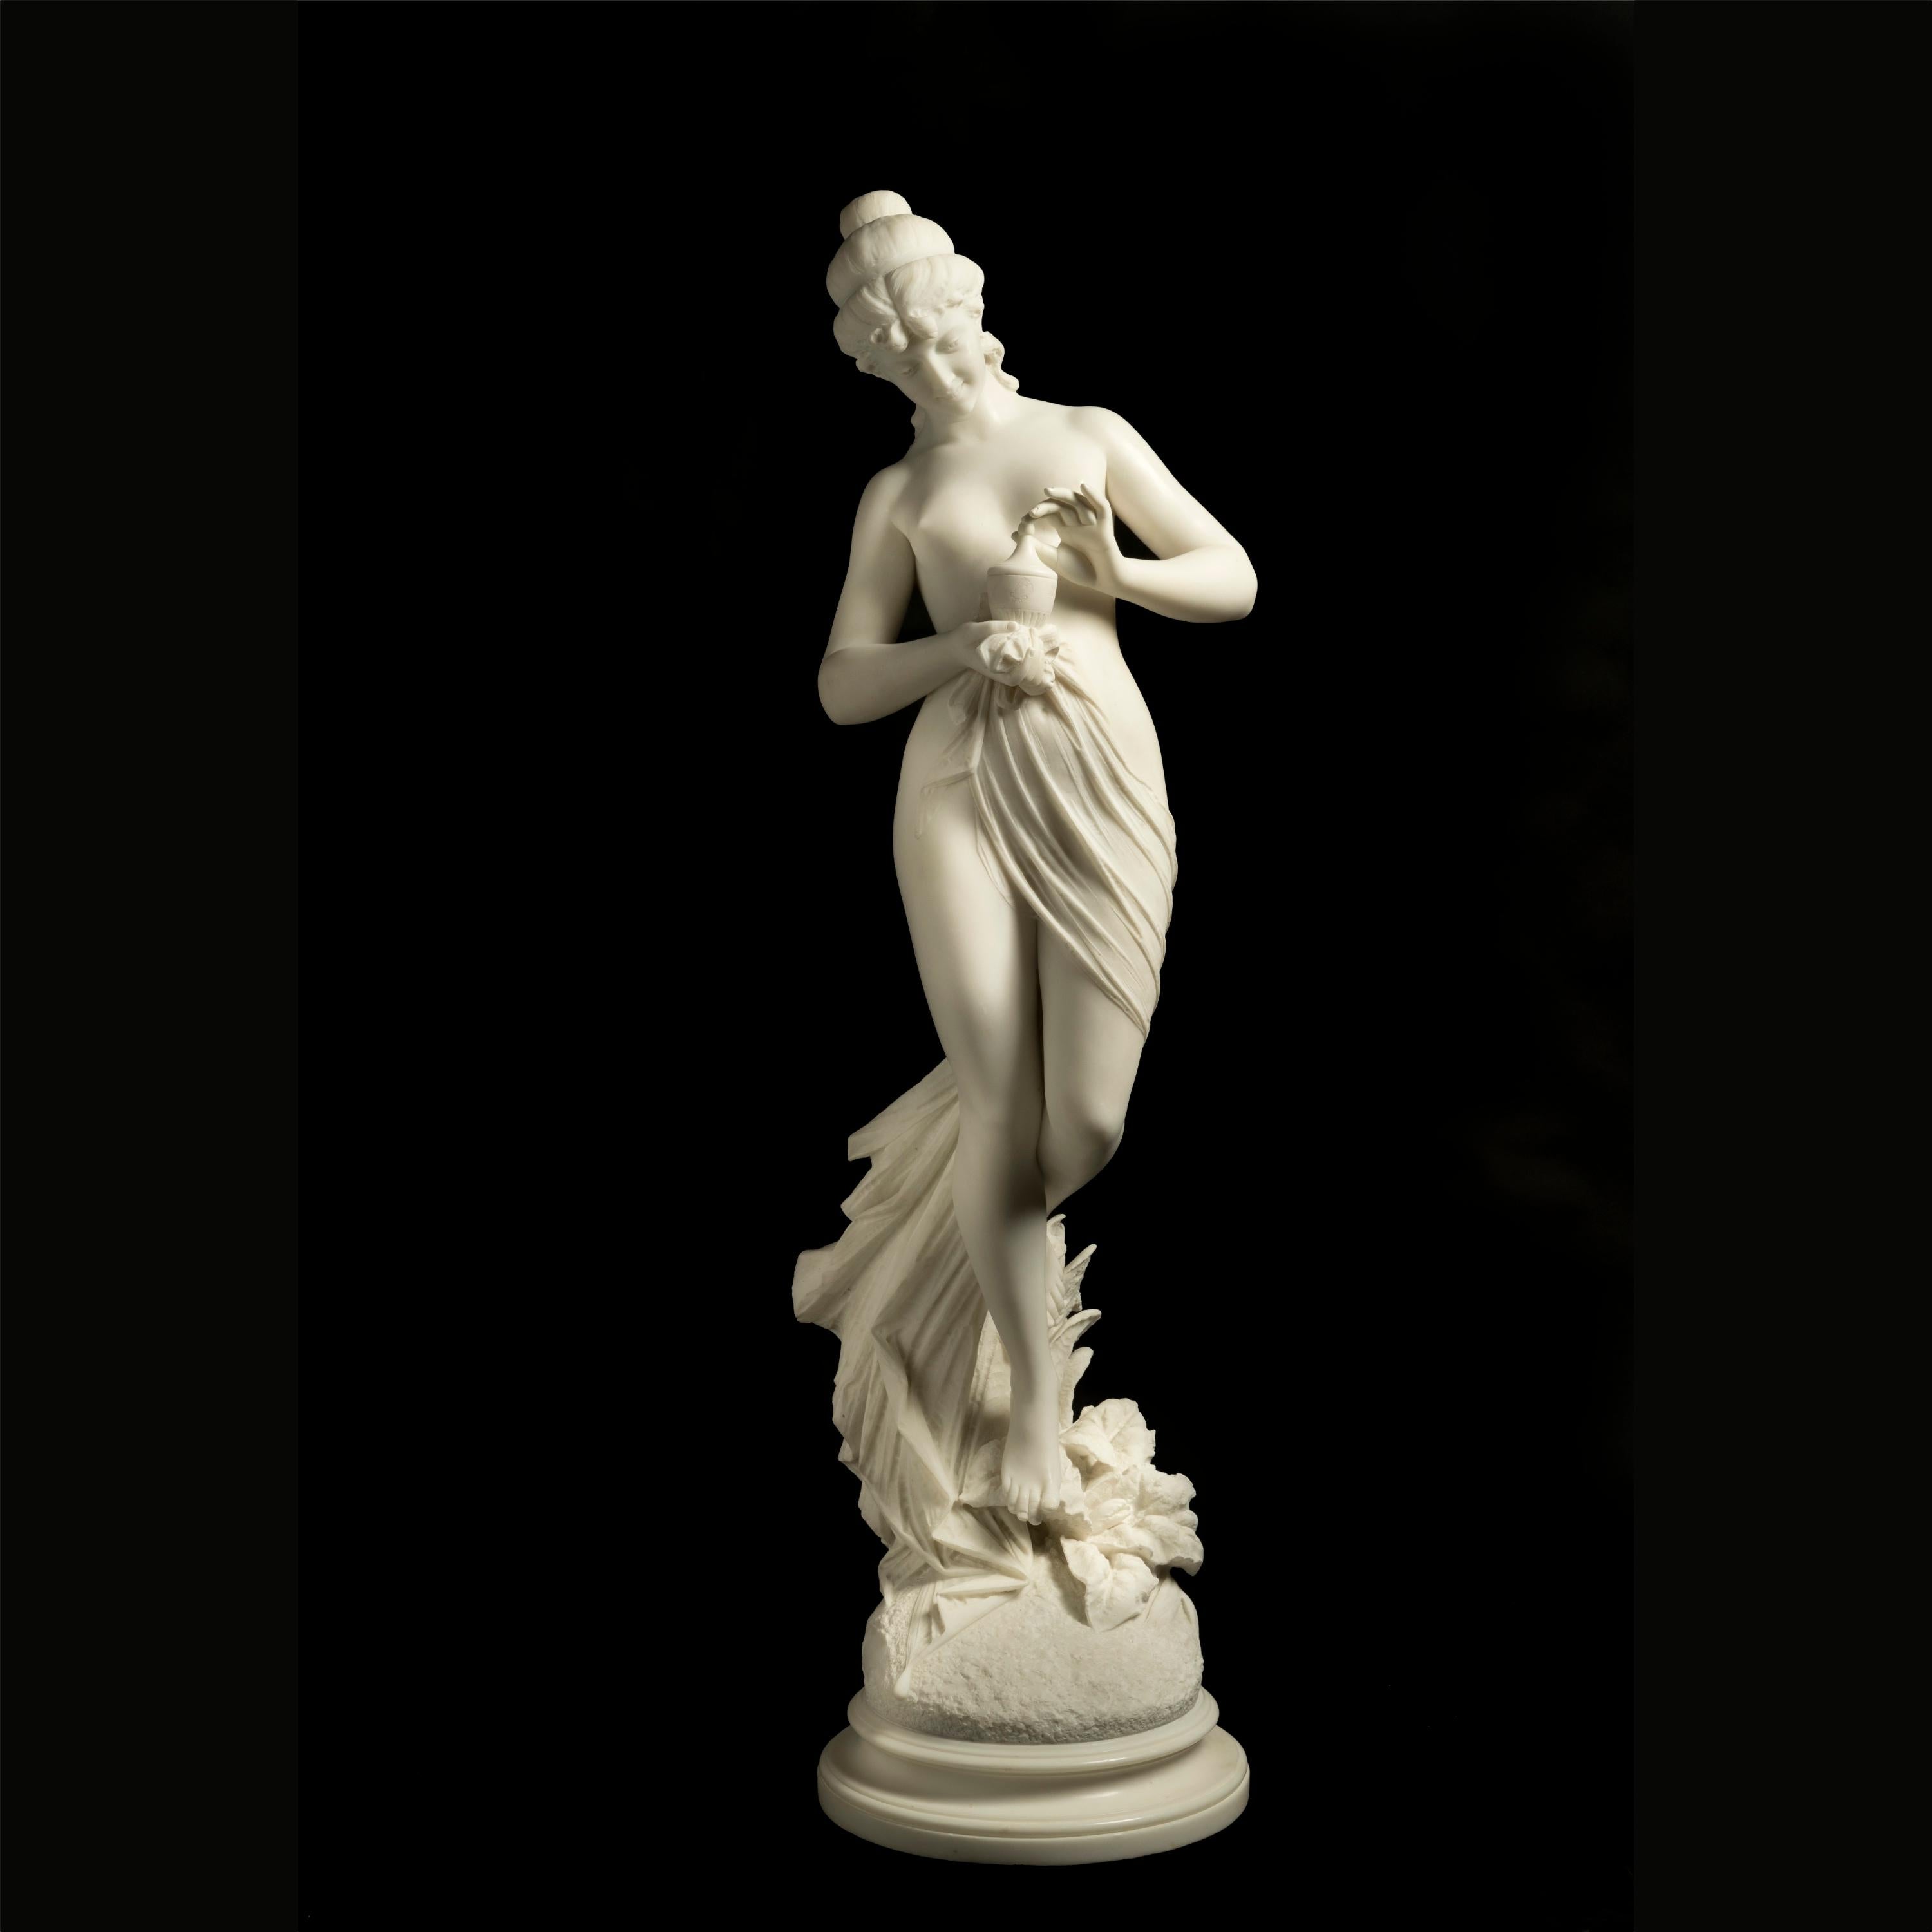 Pandora
Par Ferdinando Andreini

Sculptée dans le marbre avec une grande virtuosité, elle représente la figure mythologique de Pandora, drapée dans un seul vêtement fluide, qui contemple le petit vase à couvercle qu'elle tient dans ses mains, un